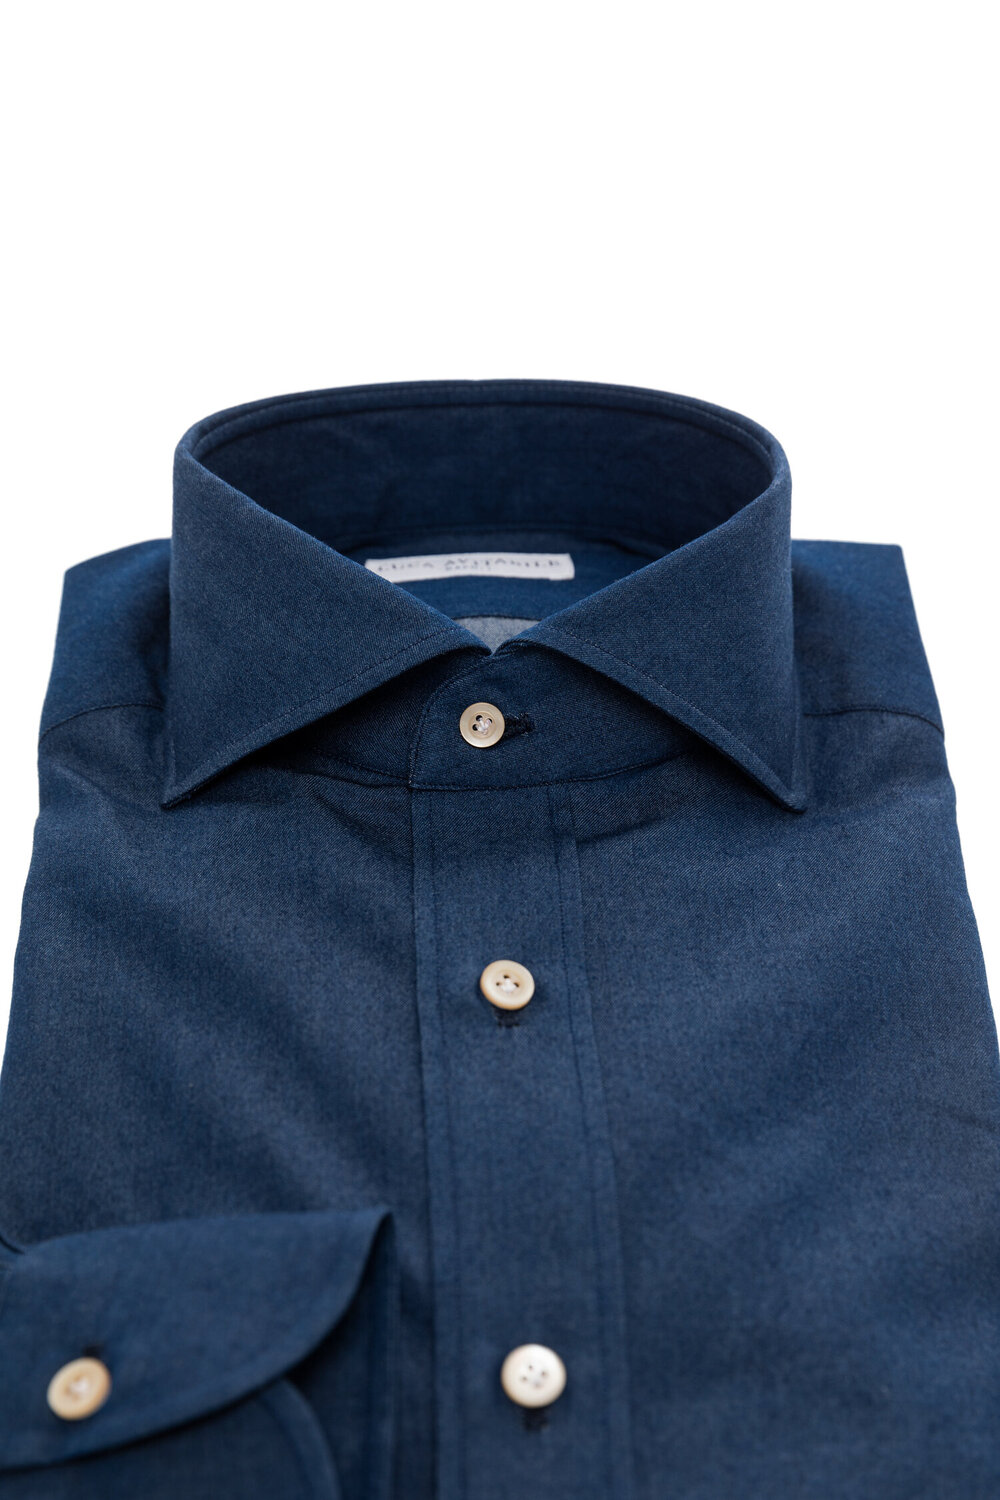 Denim - Indigo Blue Shirt - Luca Avitabile - Handmade Shirt